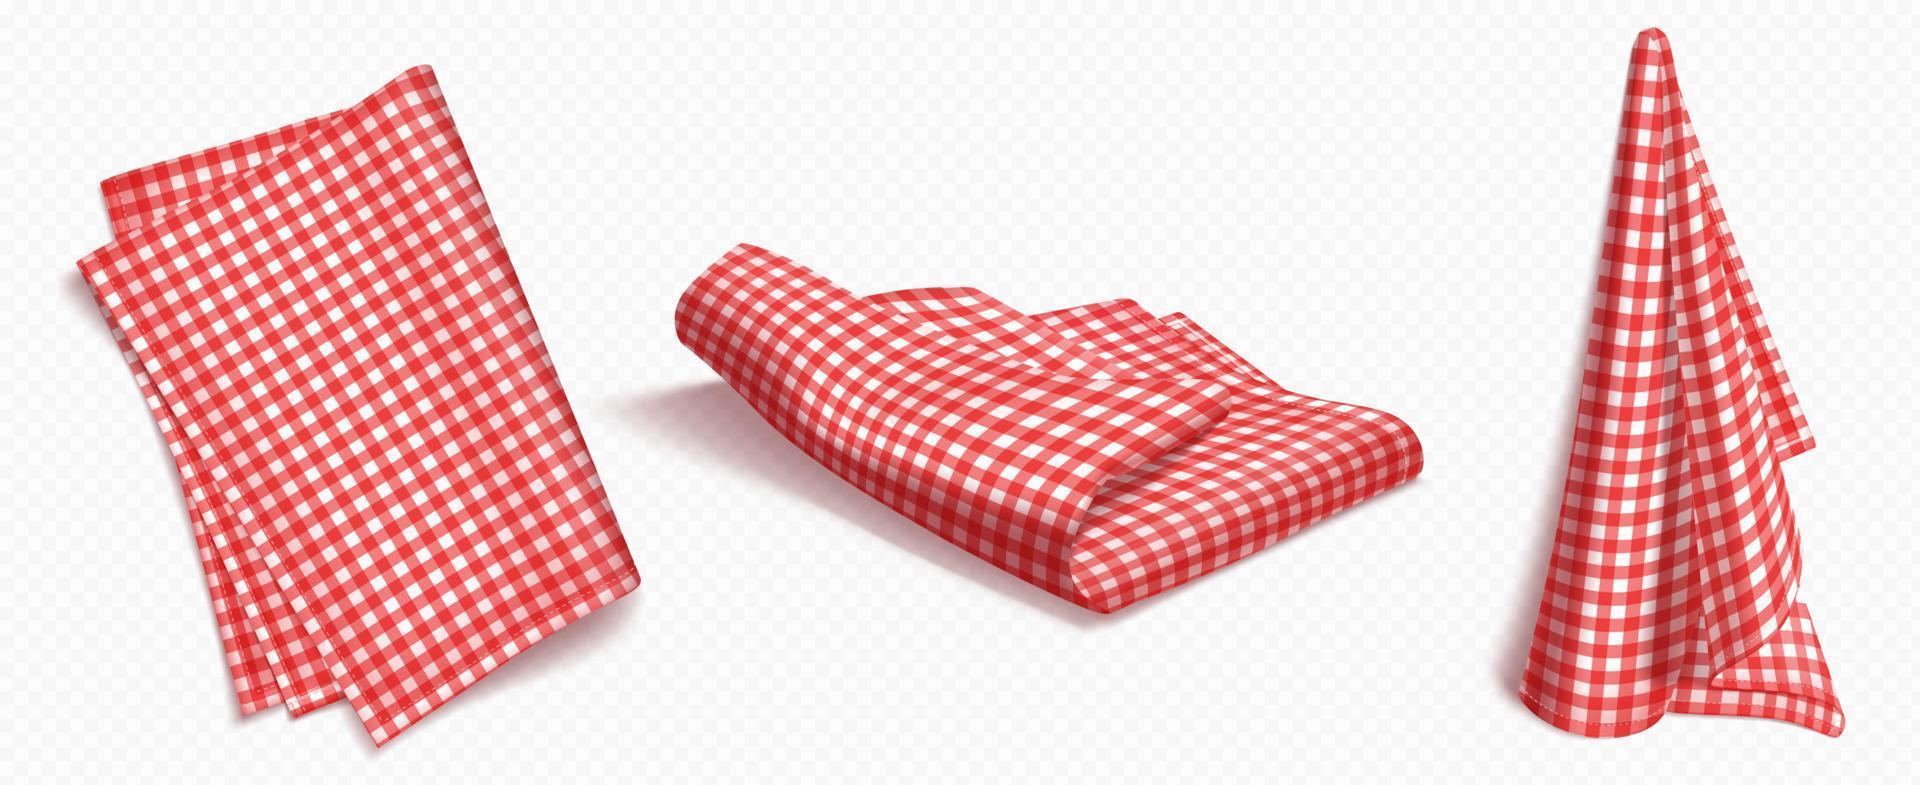 juego de toallas a cuadros rojos sobre fondo blanco vector